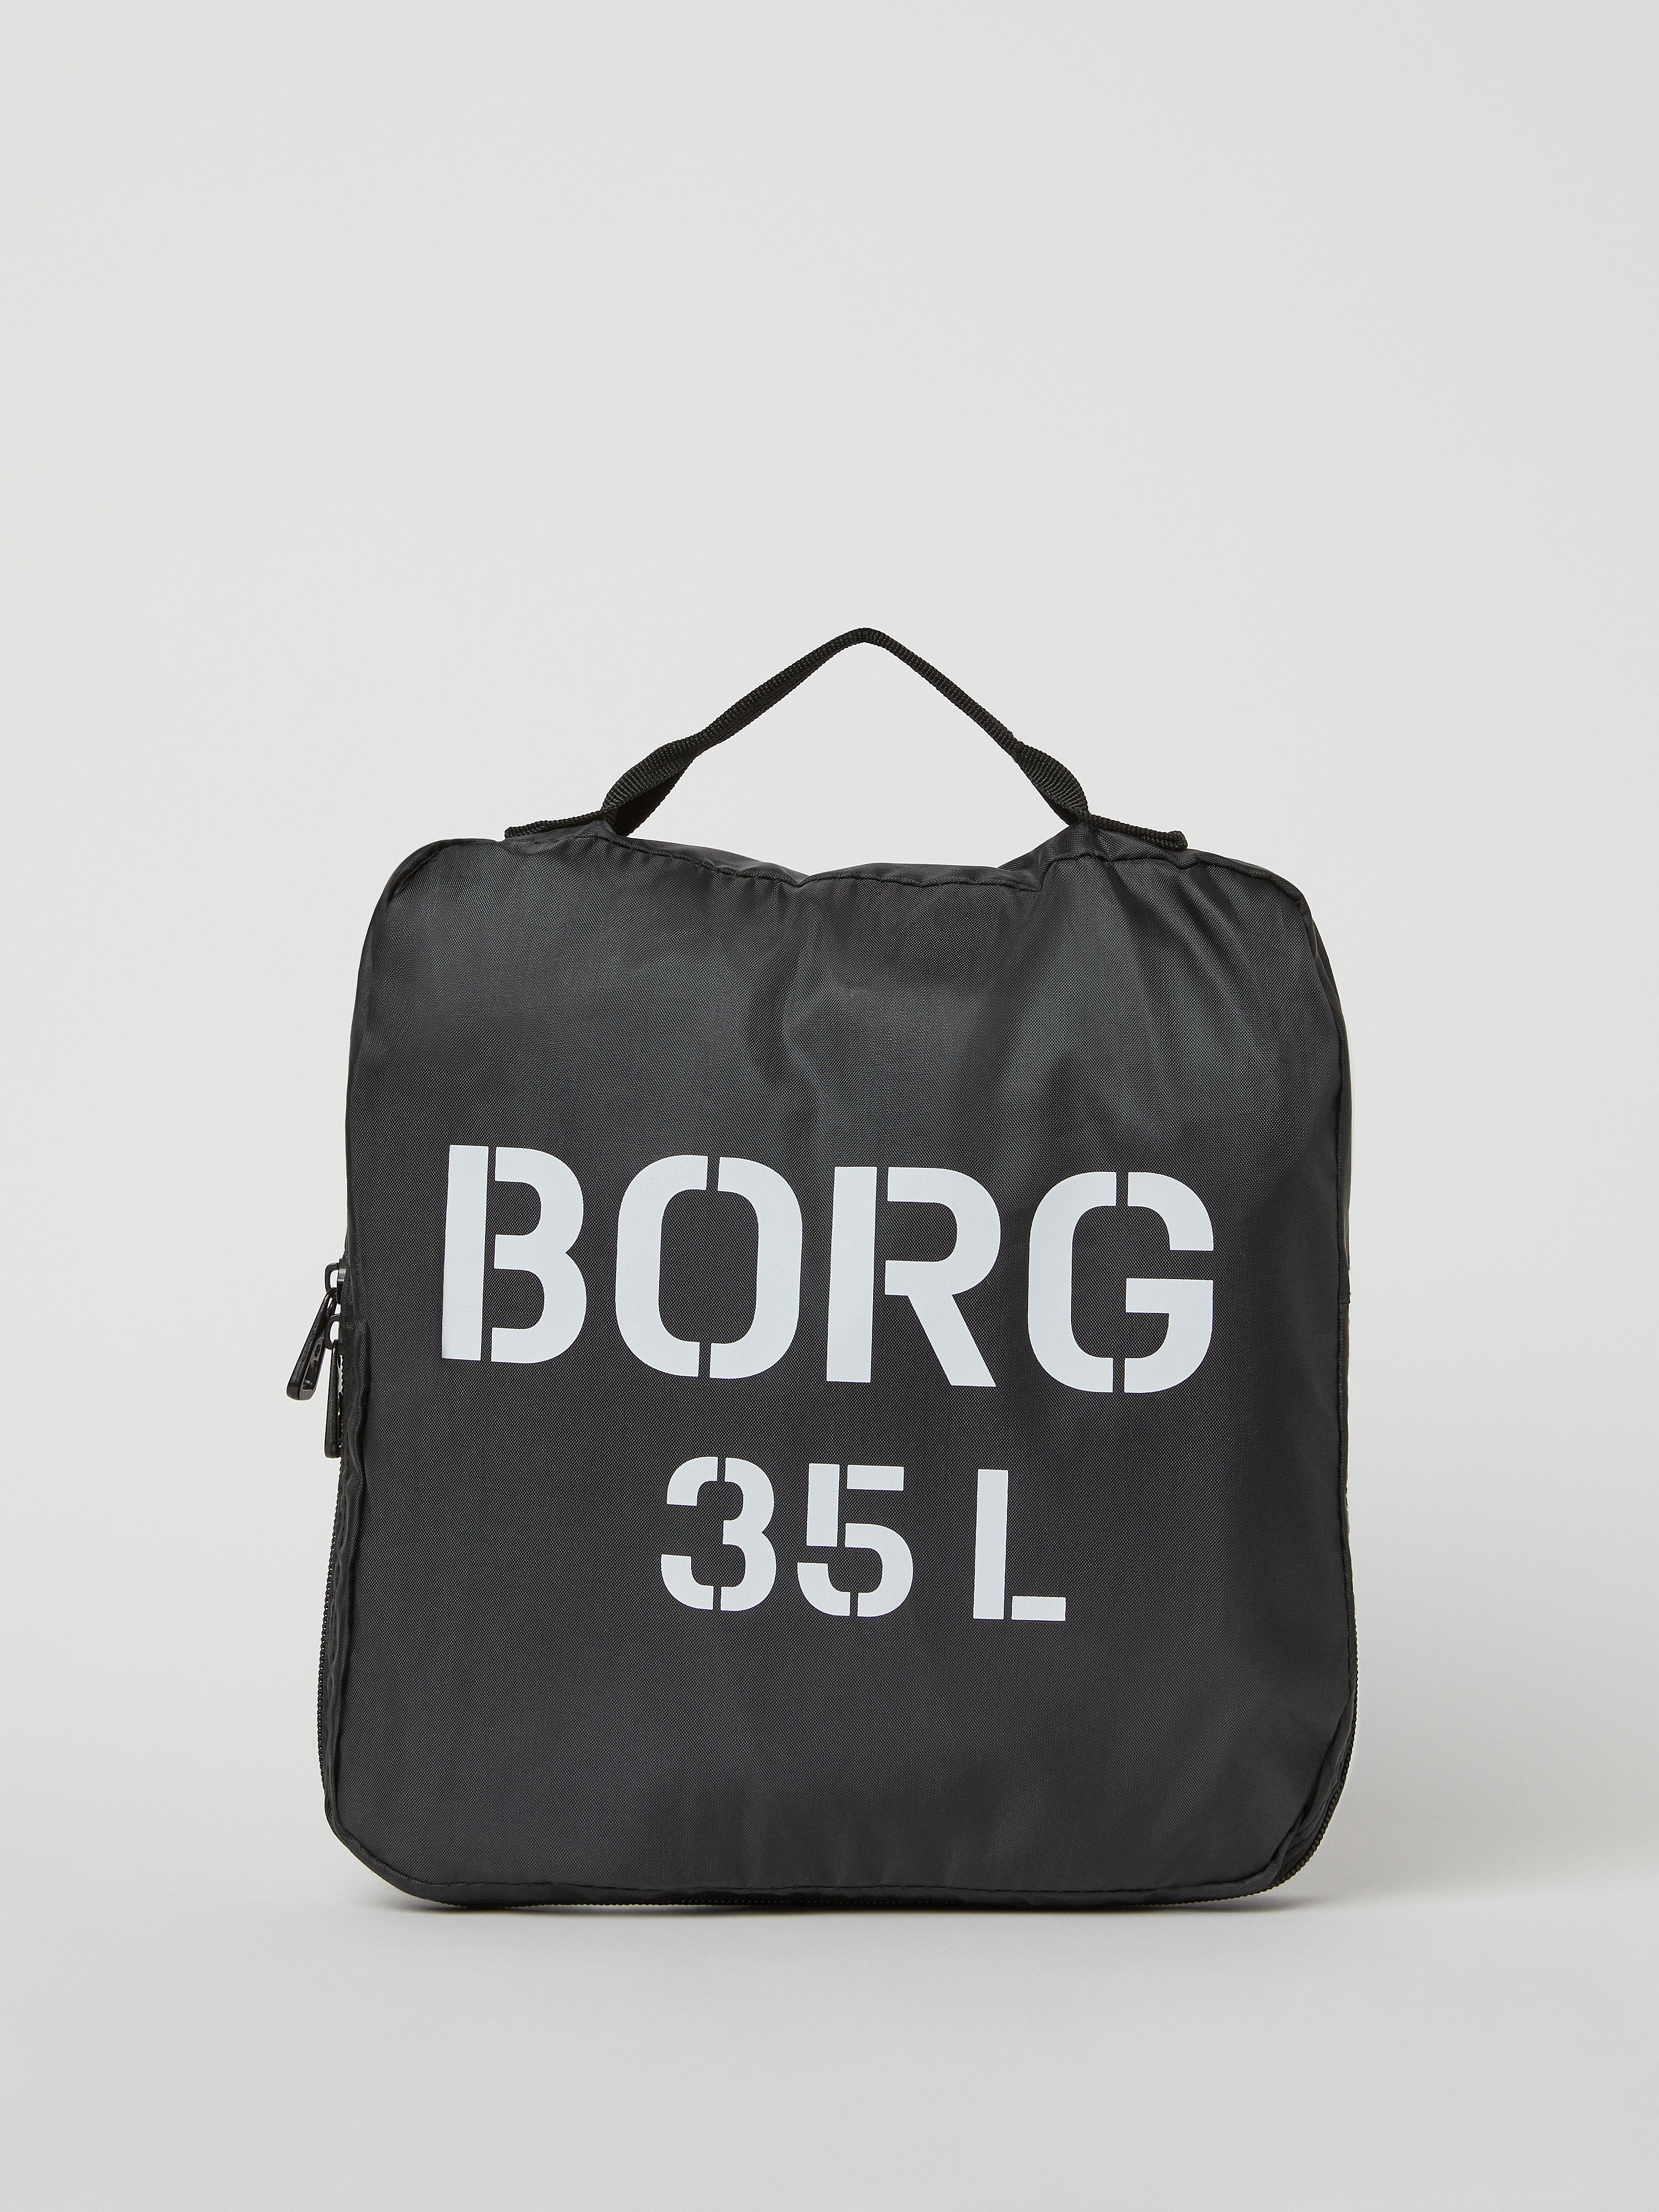 Björn Borg Synthetik Borg duffle 35l in Natur Damen Taschen Reisetaschen und Weekender 